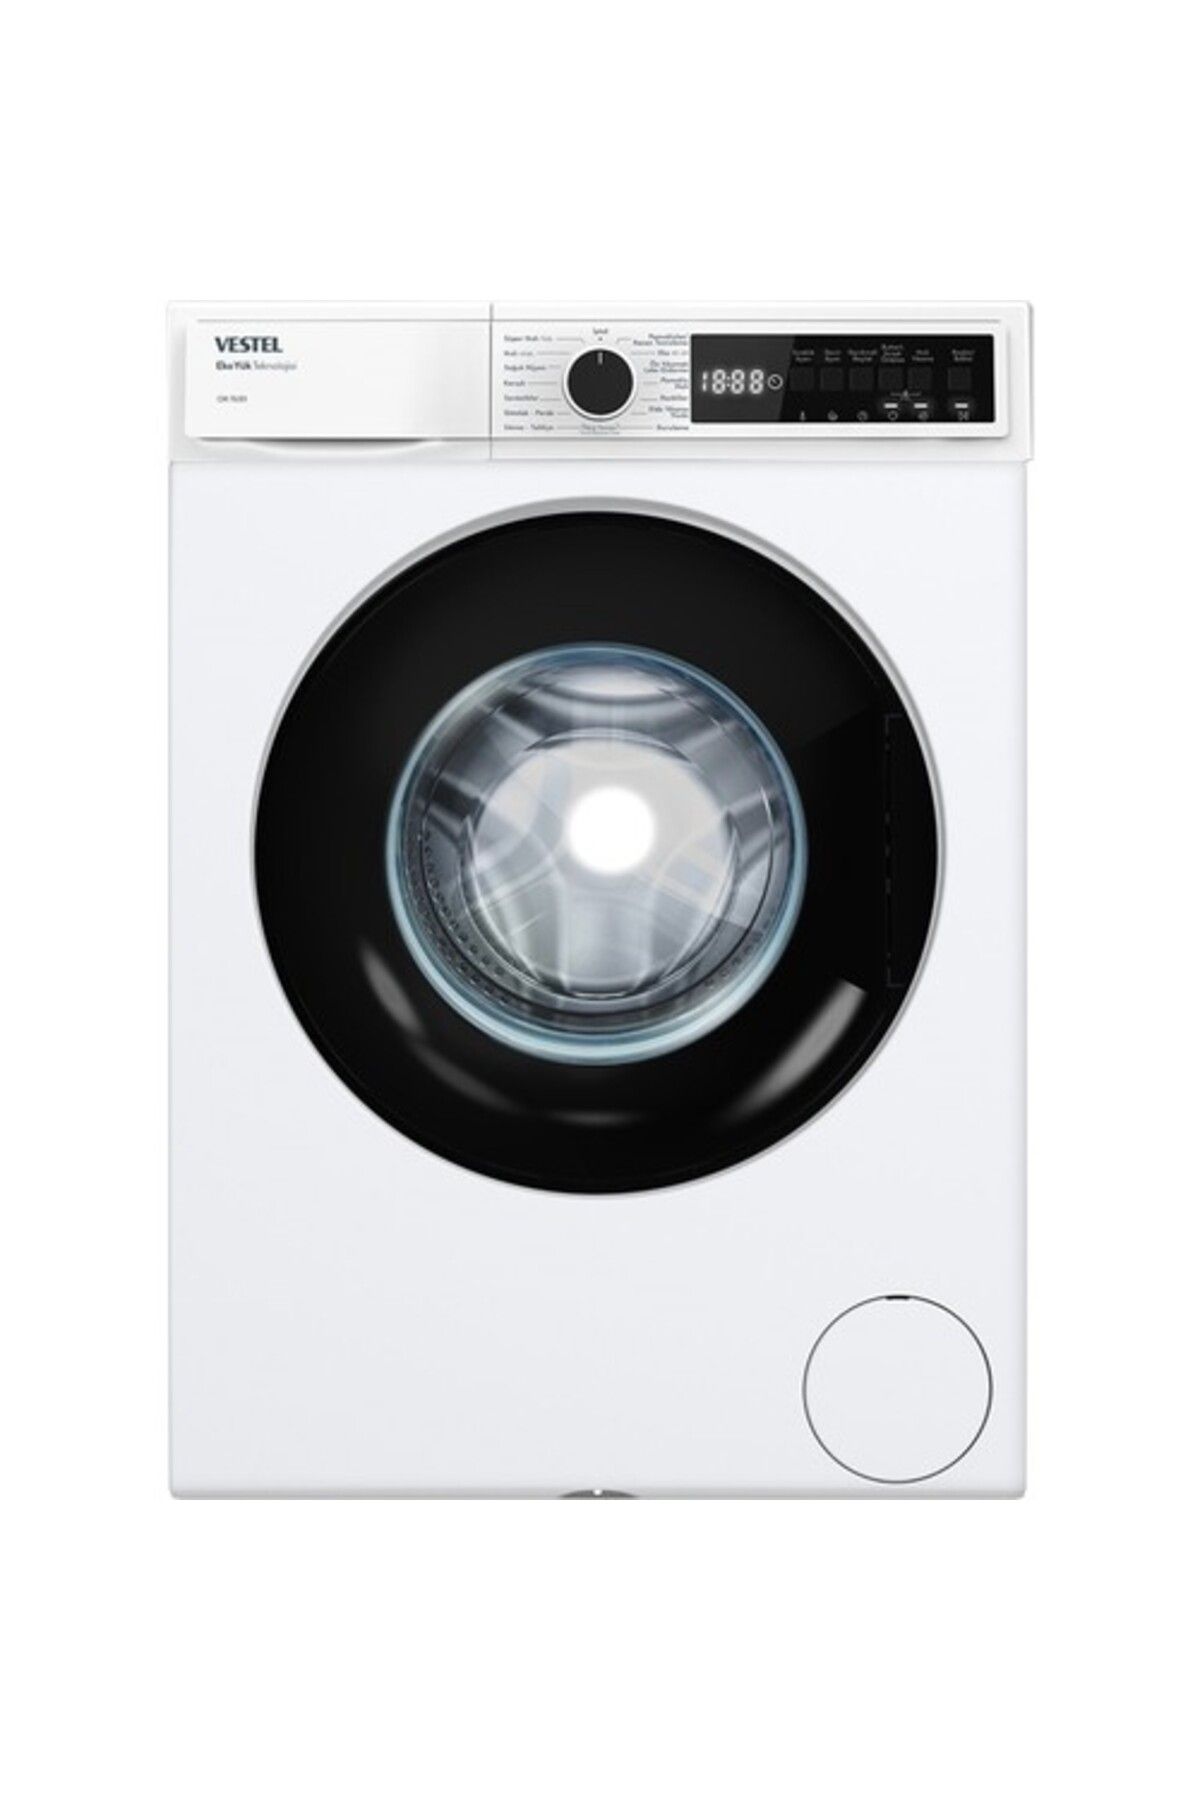 VESTEL Çamaşır Makinesi Cmı 76301